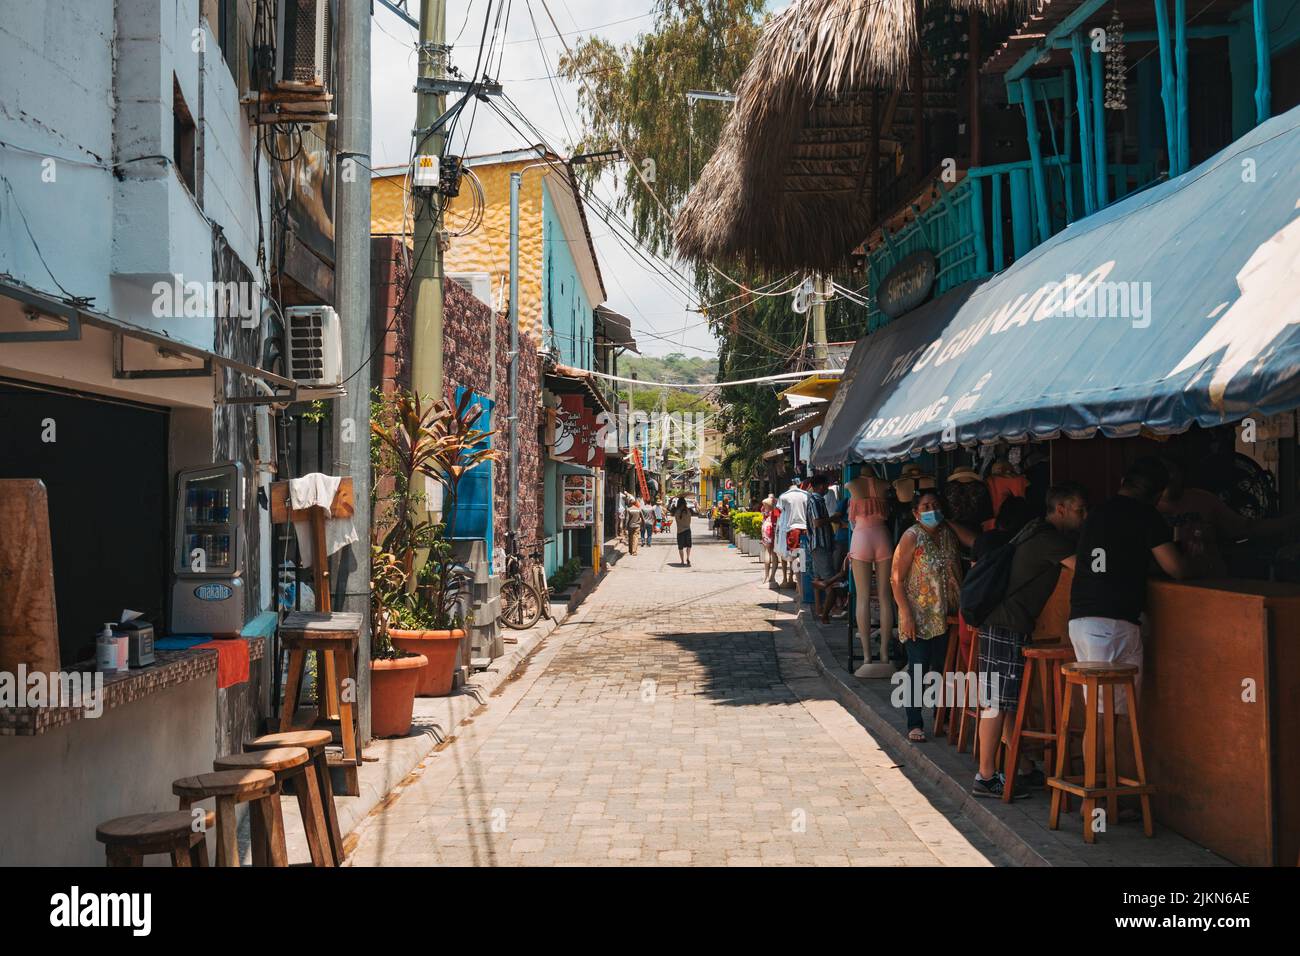 Una calle estrecha con tiendas, restaurantes y bares en El Tunco, El Salvador Foto de stock